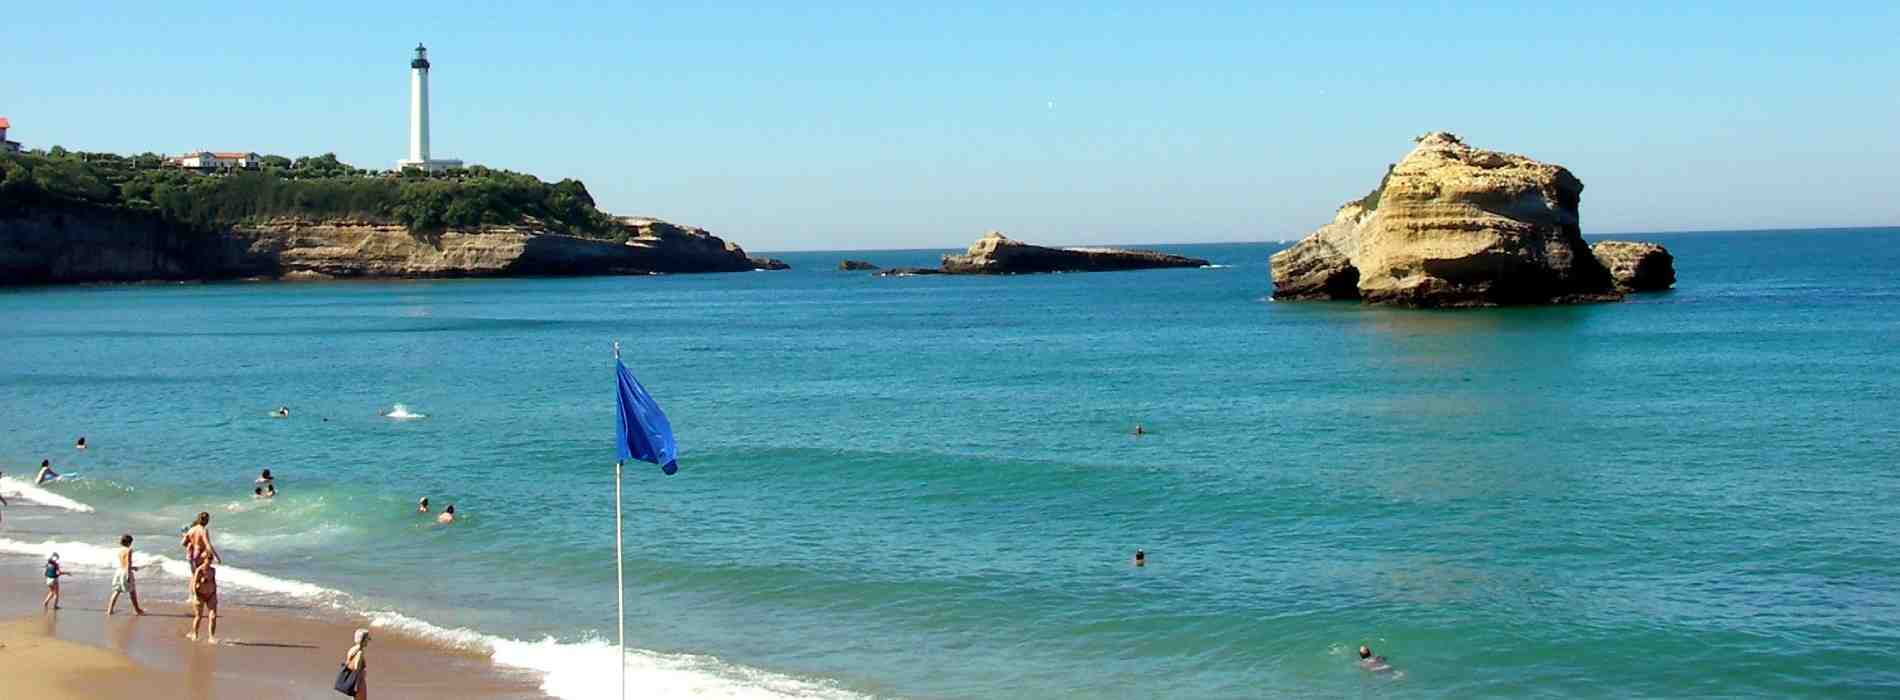 Quelle est la ville espagnole la plus proche de Biarritz ?